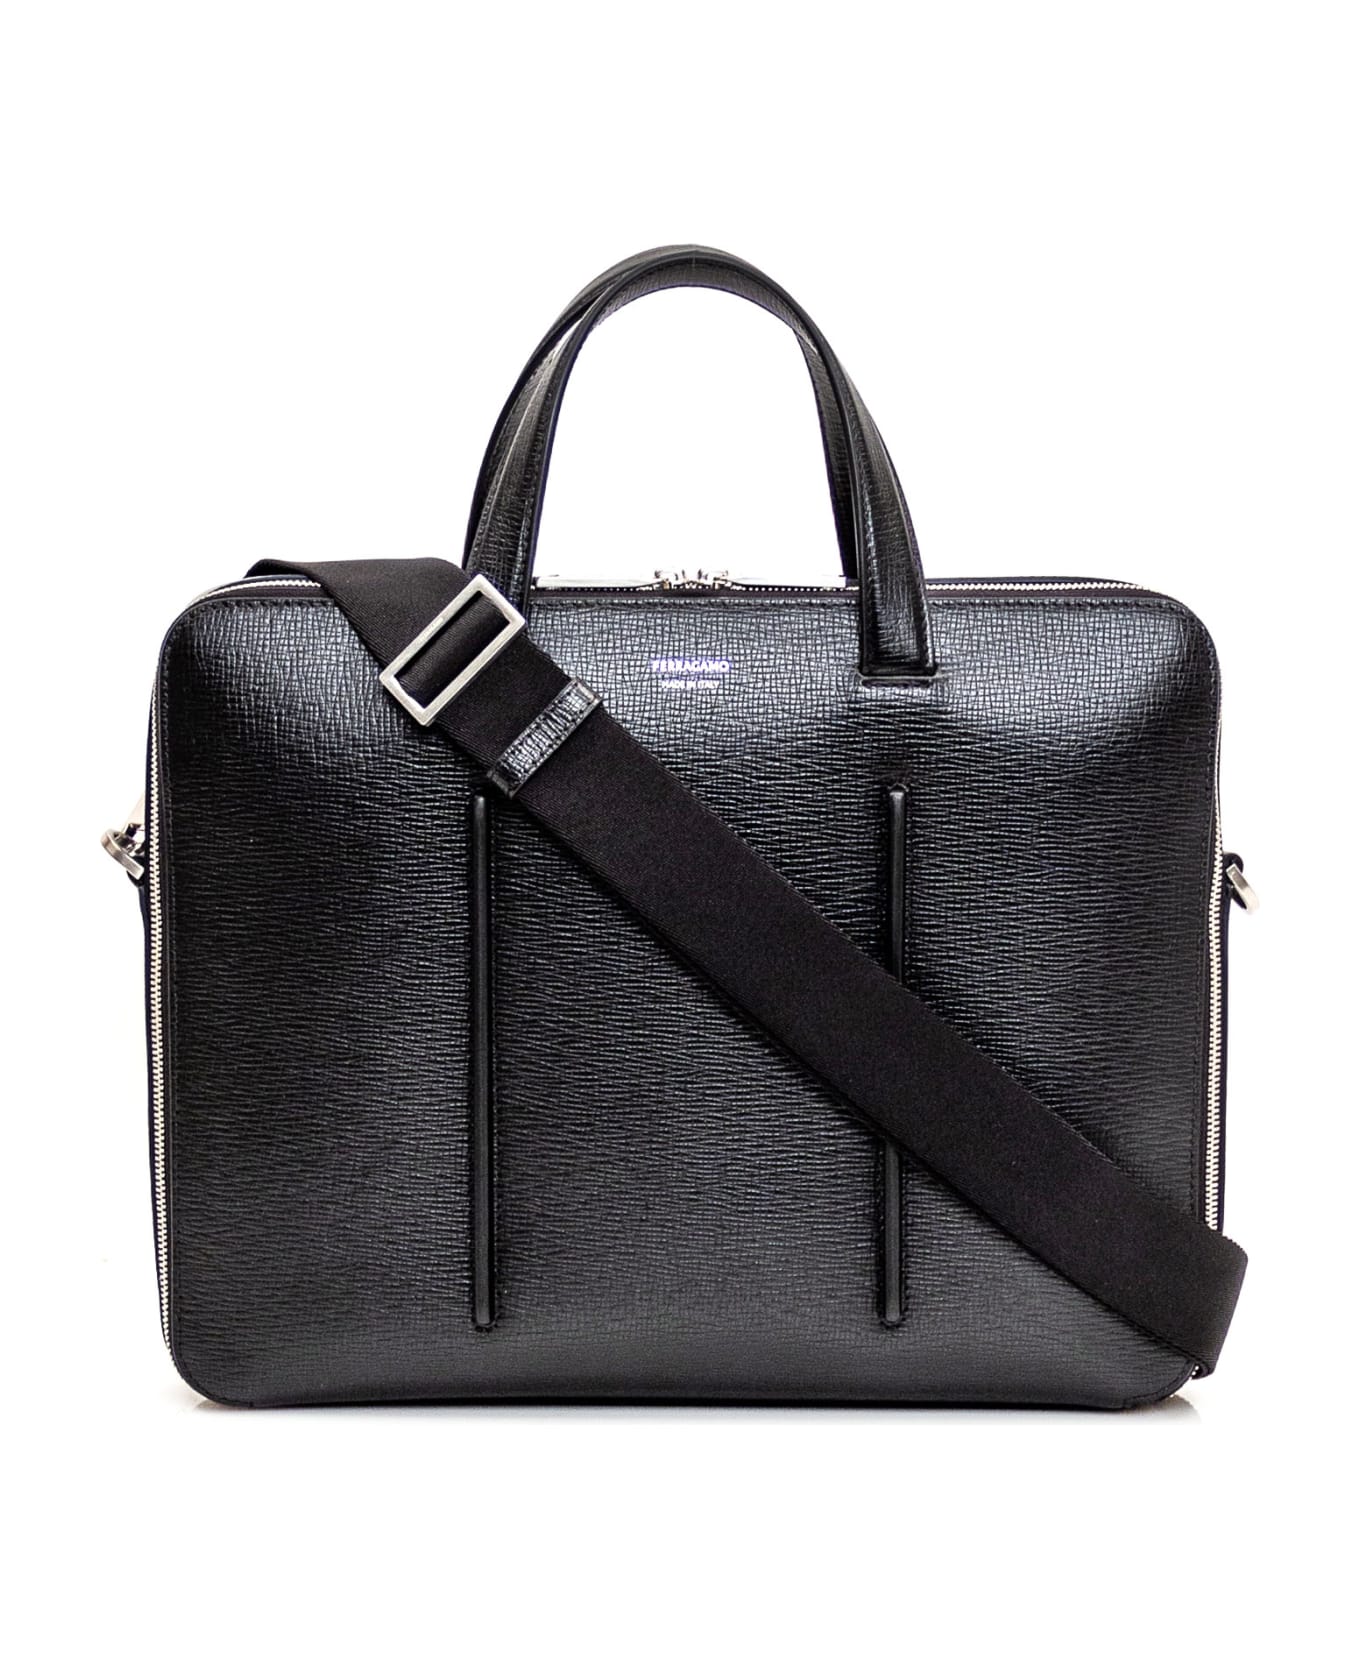 Ferragamo Business Bag With Single Compartment - NERO